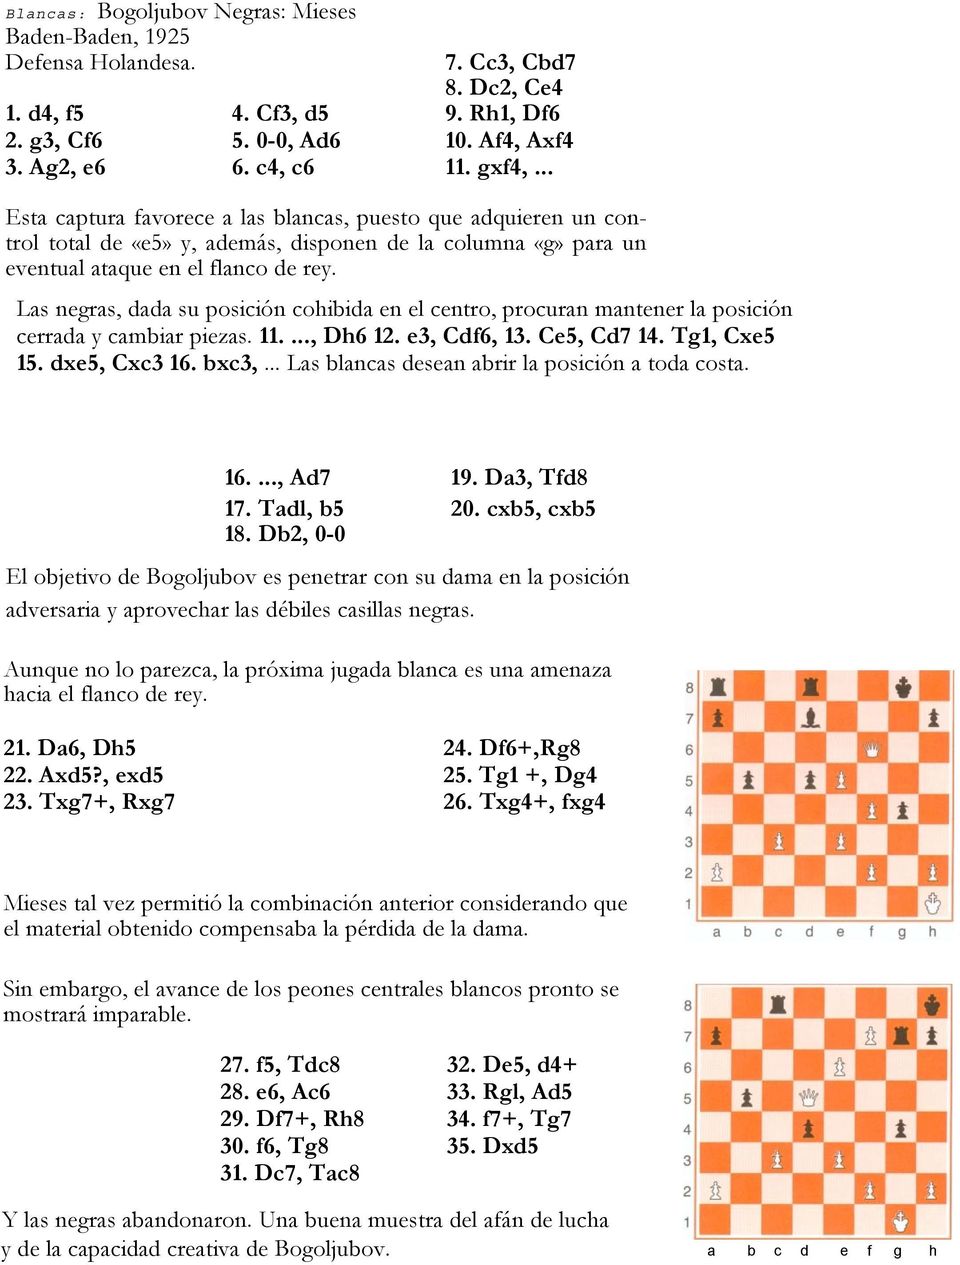 Las negras, dada su posición cohibida en el centro, procuran mantener la posición cerrada y cambiar piezas. 11...., Dh6 12. e3, Cdf6, 13. Ce5, Cd7 14. Tg1, Cxe5 15. dxe5, Cxc3 16. bxc3,.